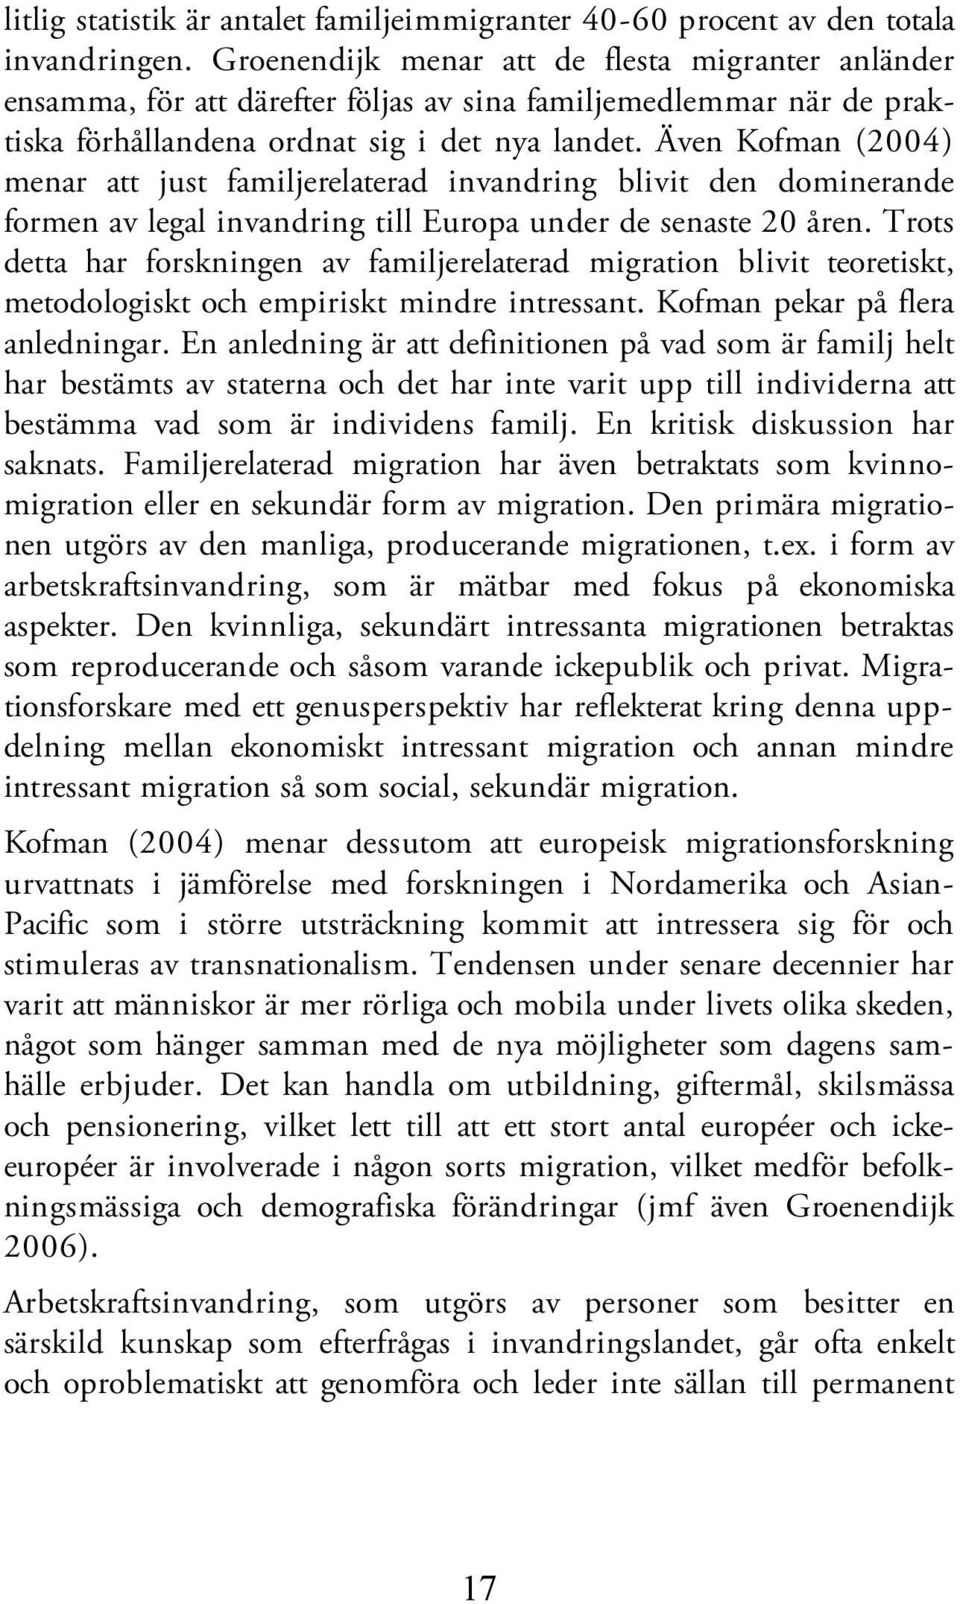 Även Kofman (2004) menar att just familjerelaterad invandring blivit den dominerande formen av legal invandring till Europa under de senaste 20 åren.